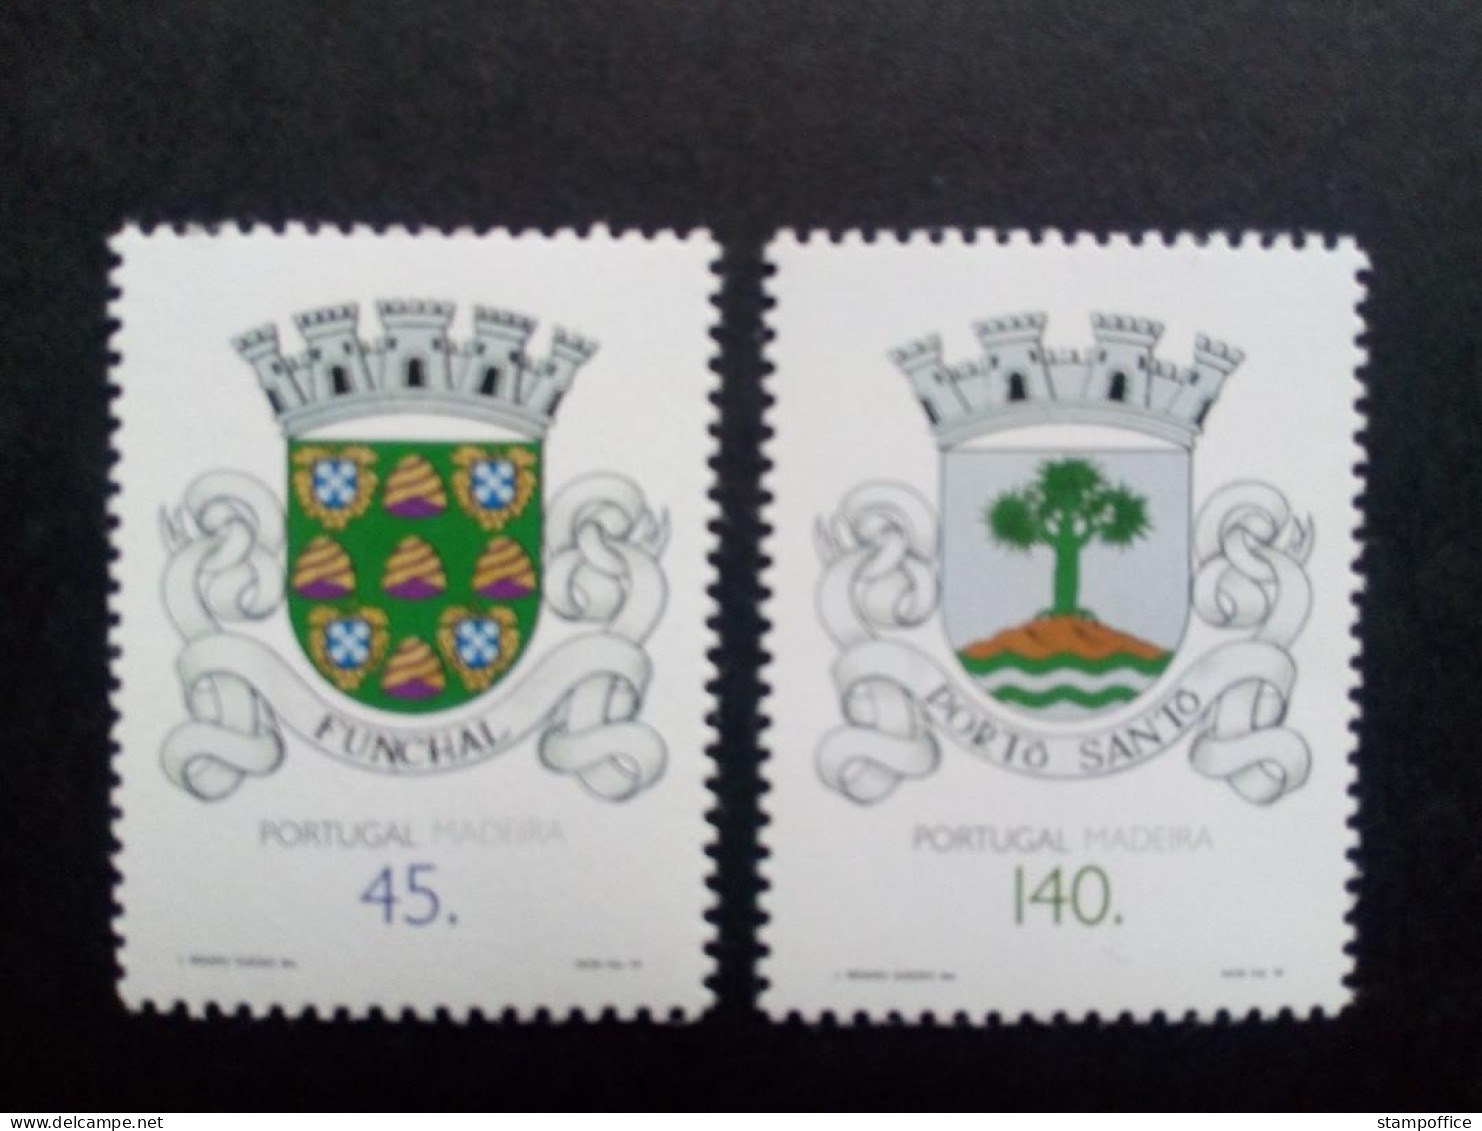 MADEIRA MI-NR. 176-177 POSTFRISCH GEMEINDEWAPPEN 1994 - Postzegels